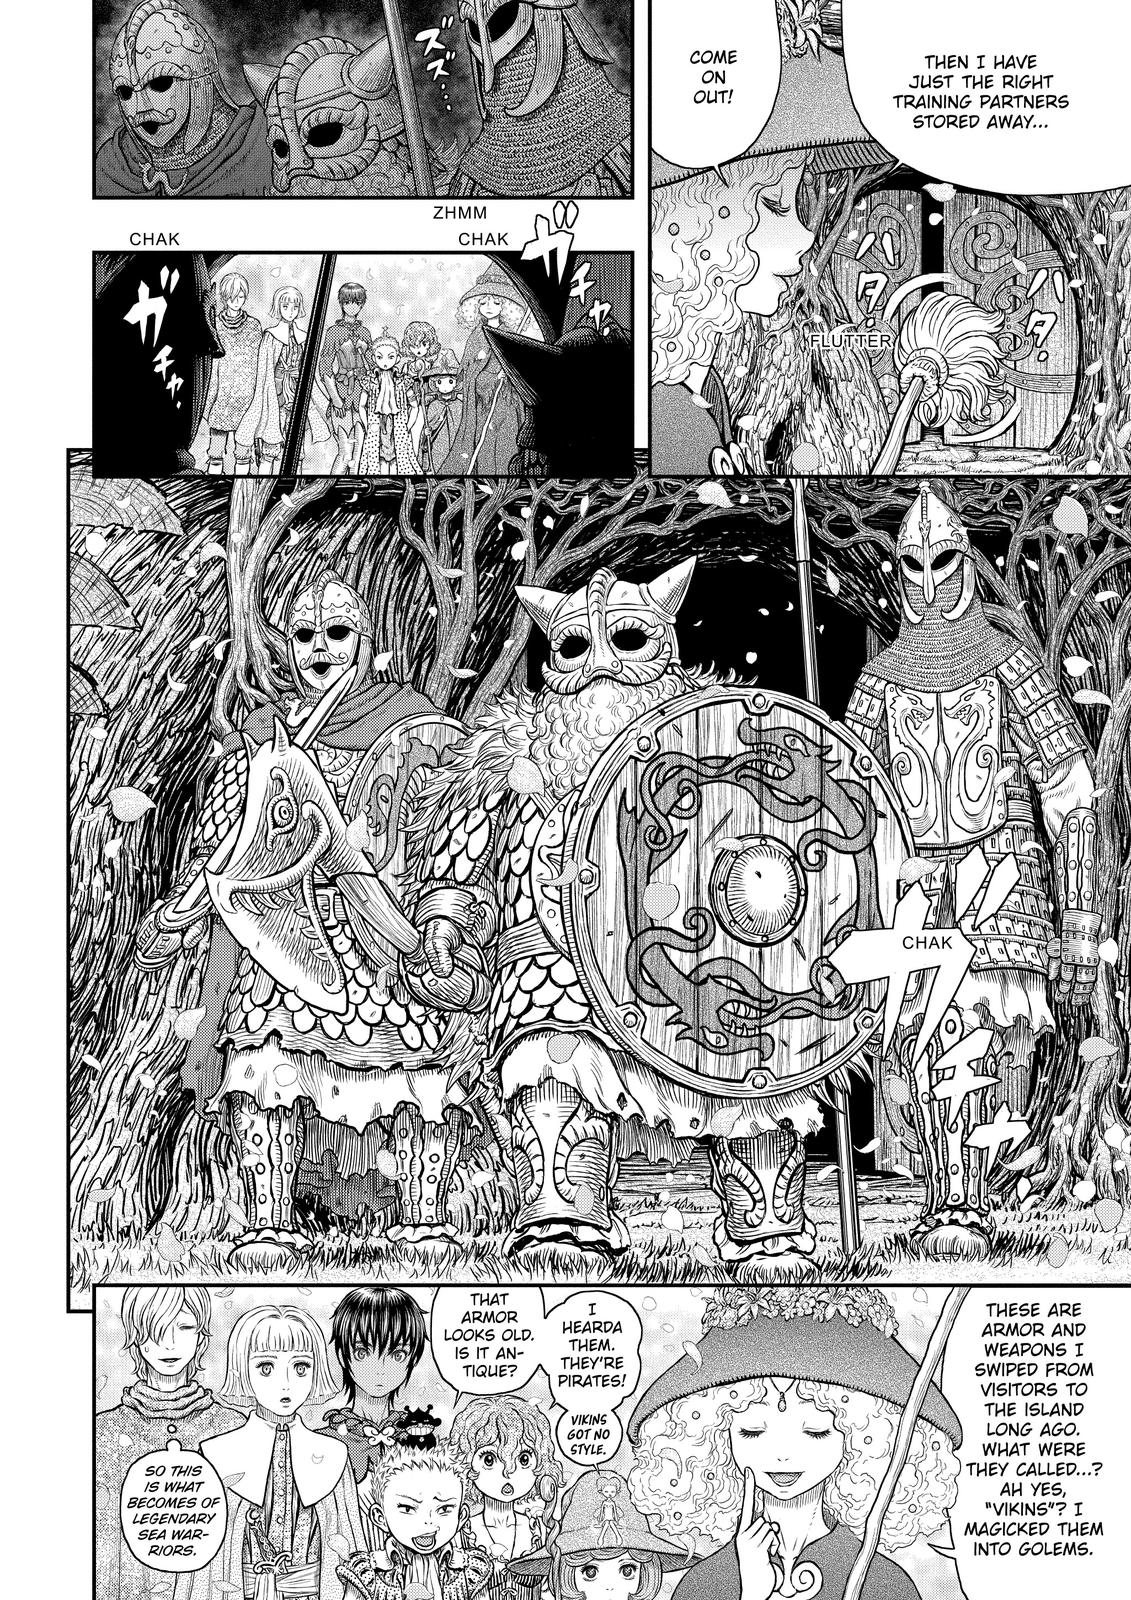 Berserk Manga Chapter 359 image 06